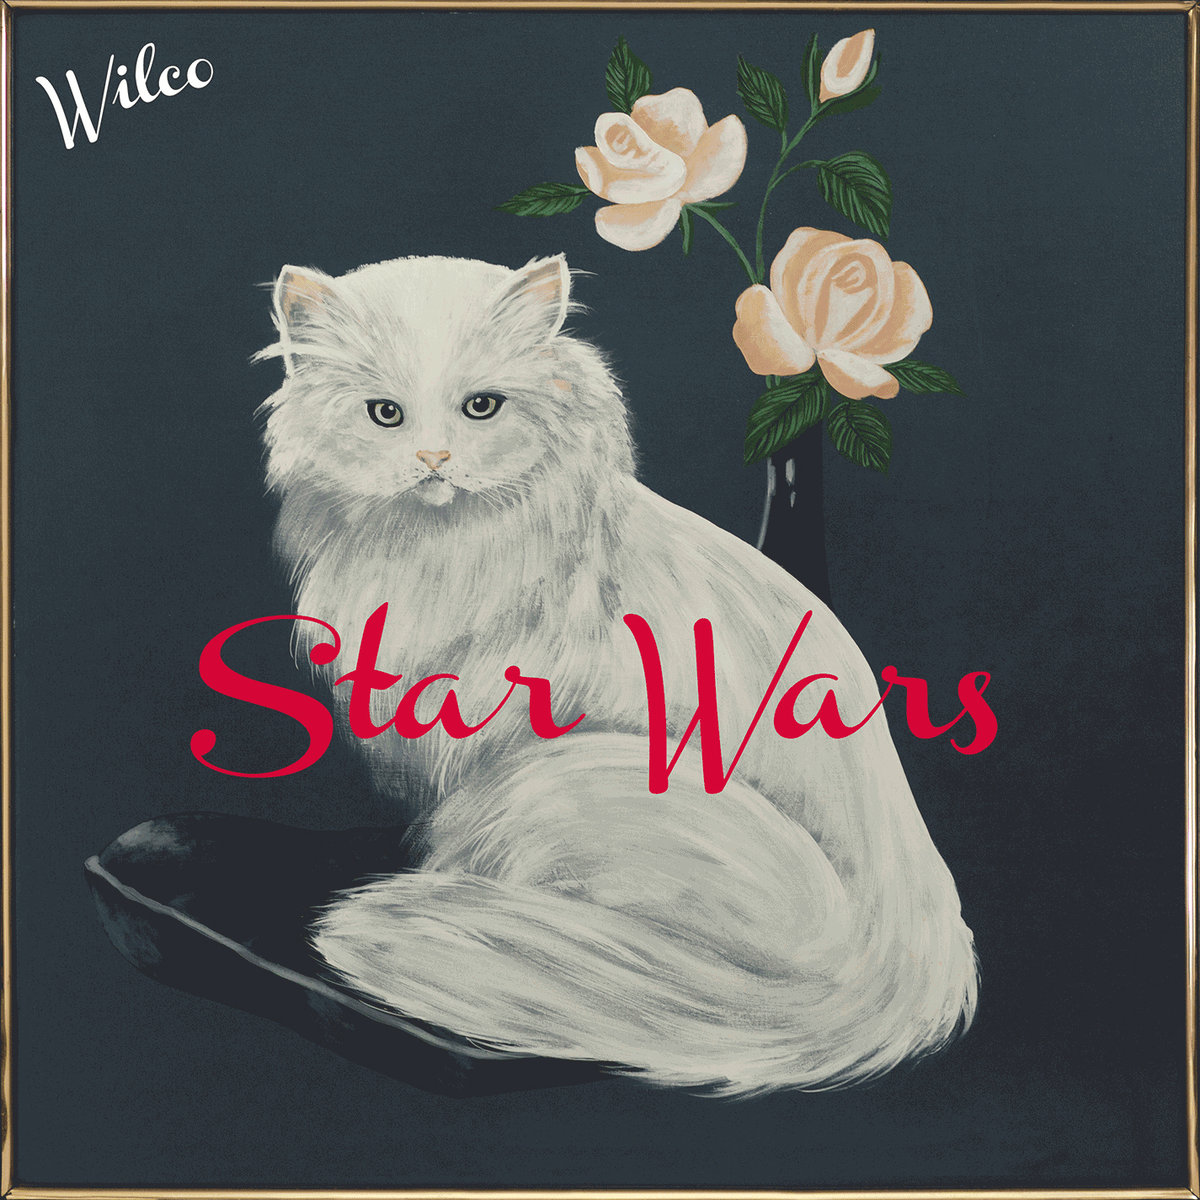 Star Wars album art